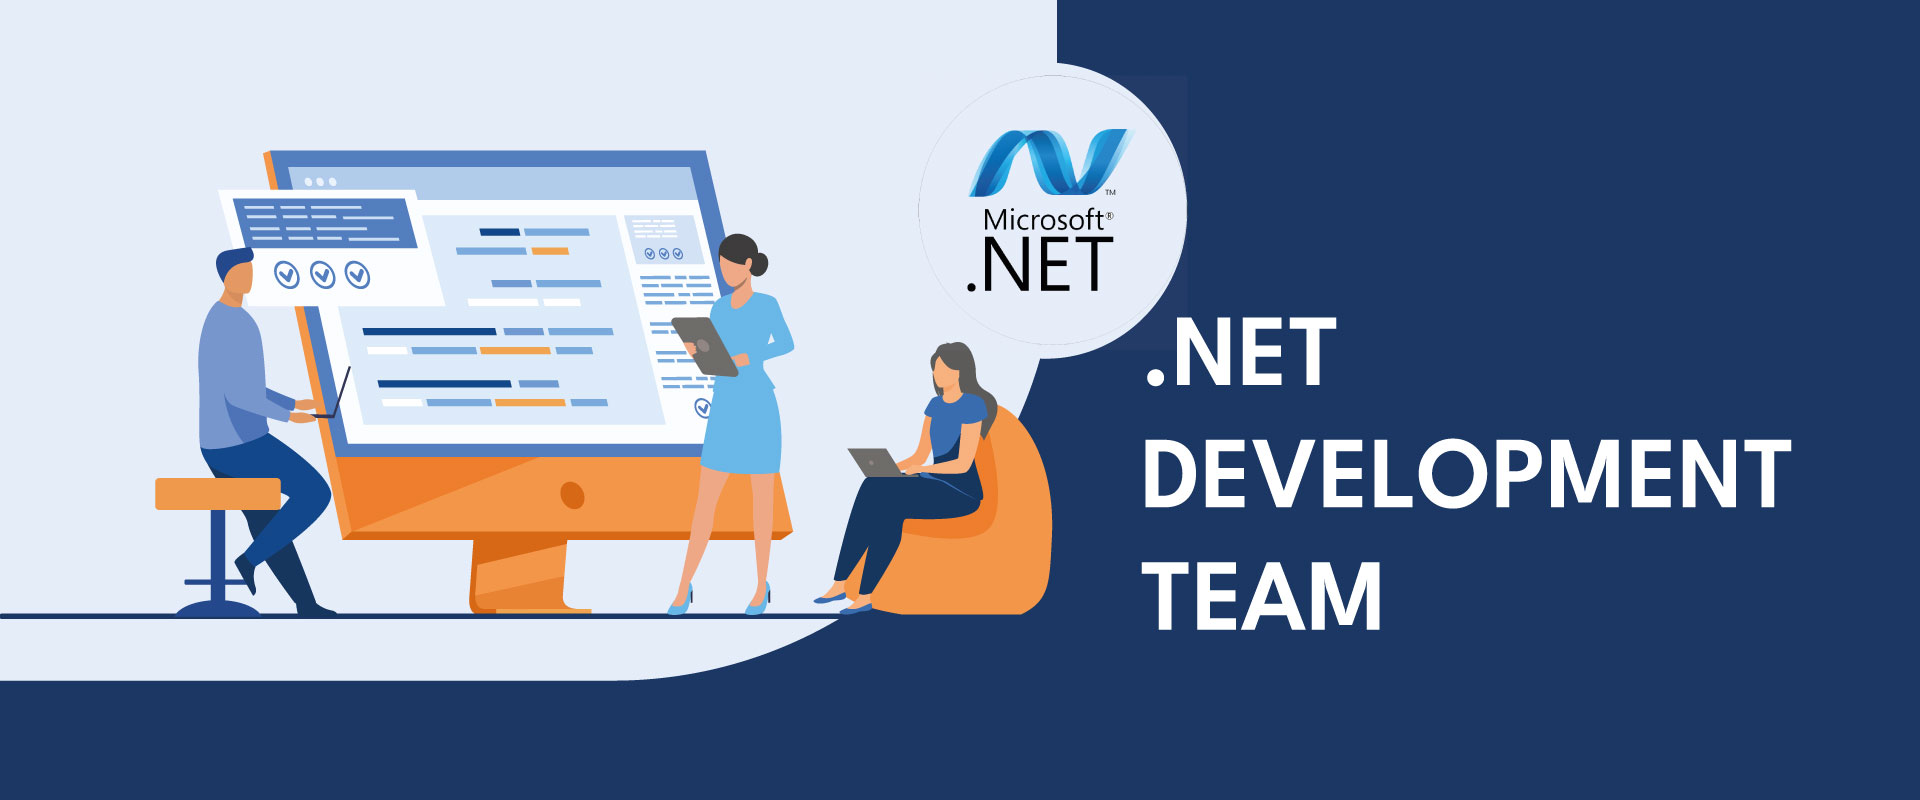 Net-Development-Team